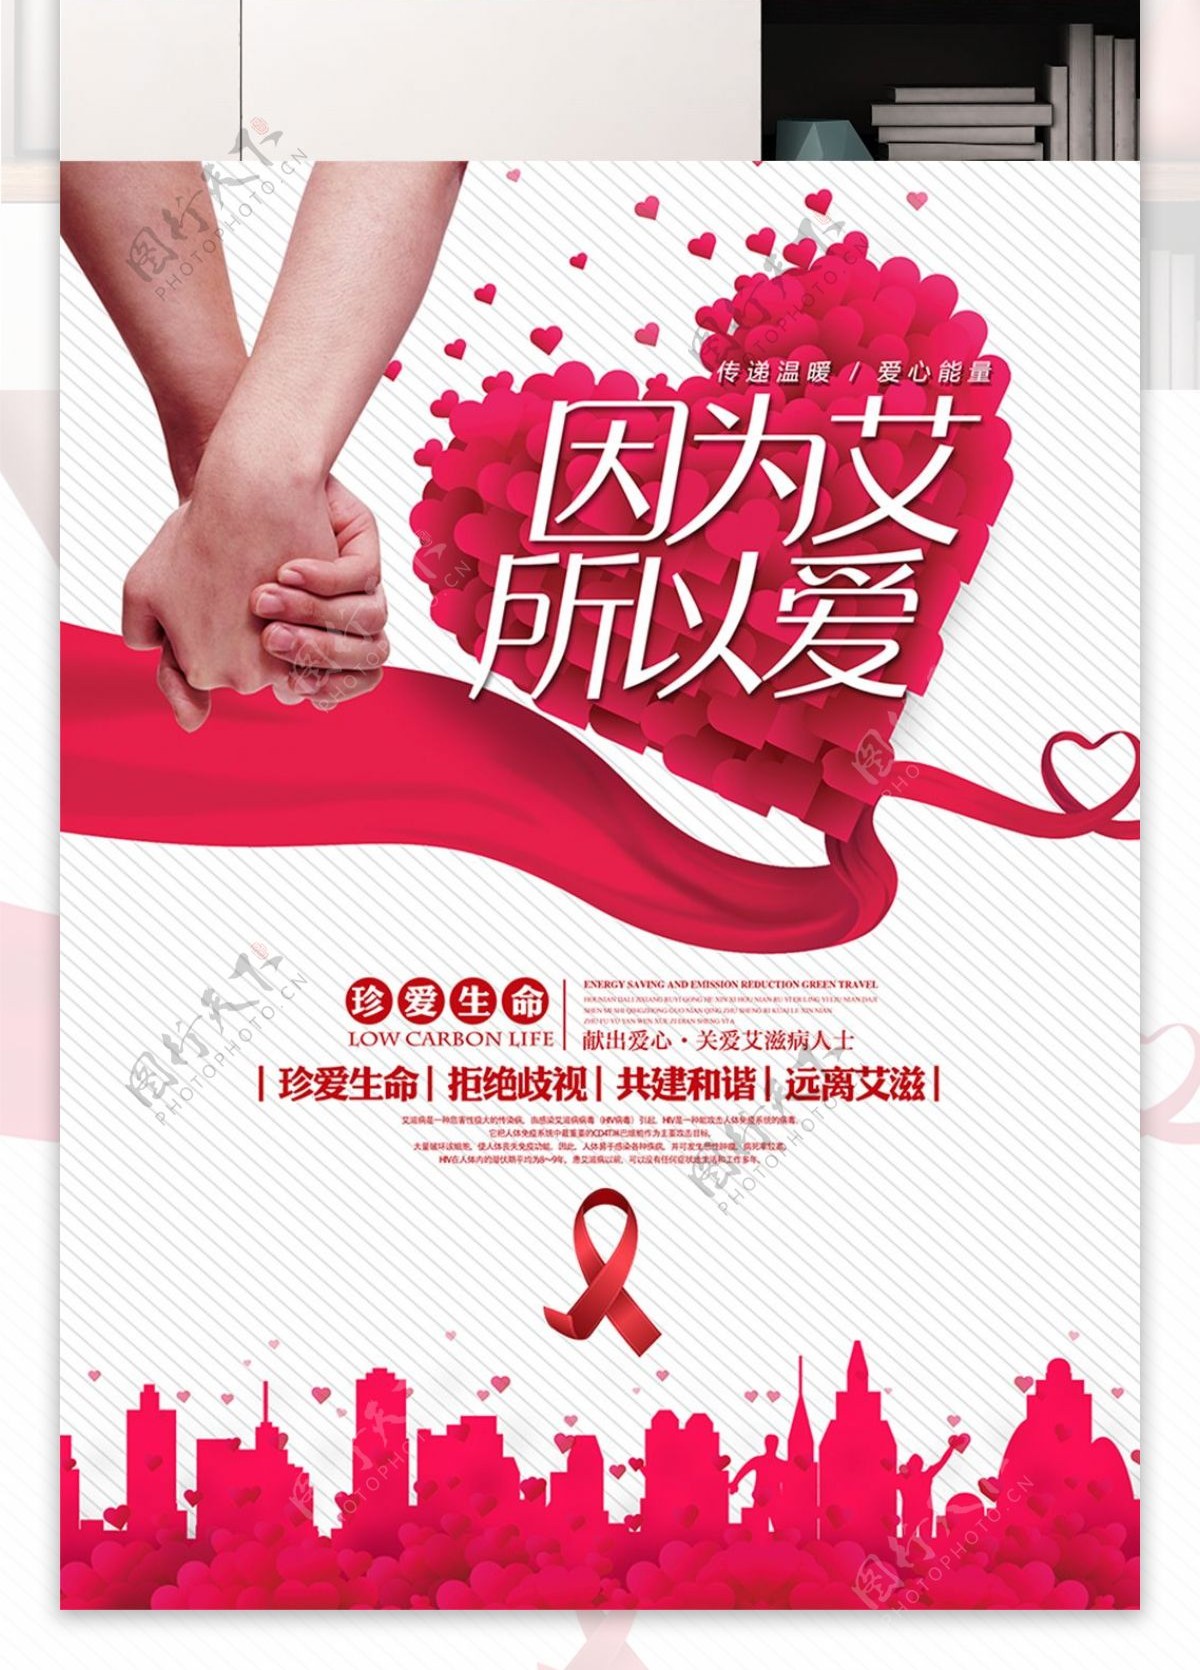 清新简约唯美防治艾滋病公益宣传海报展板